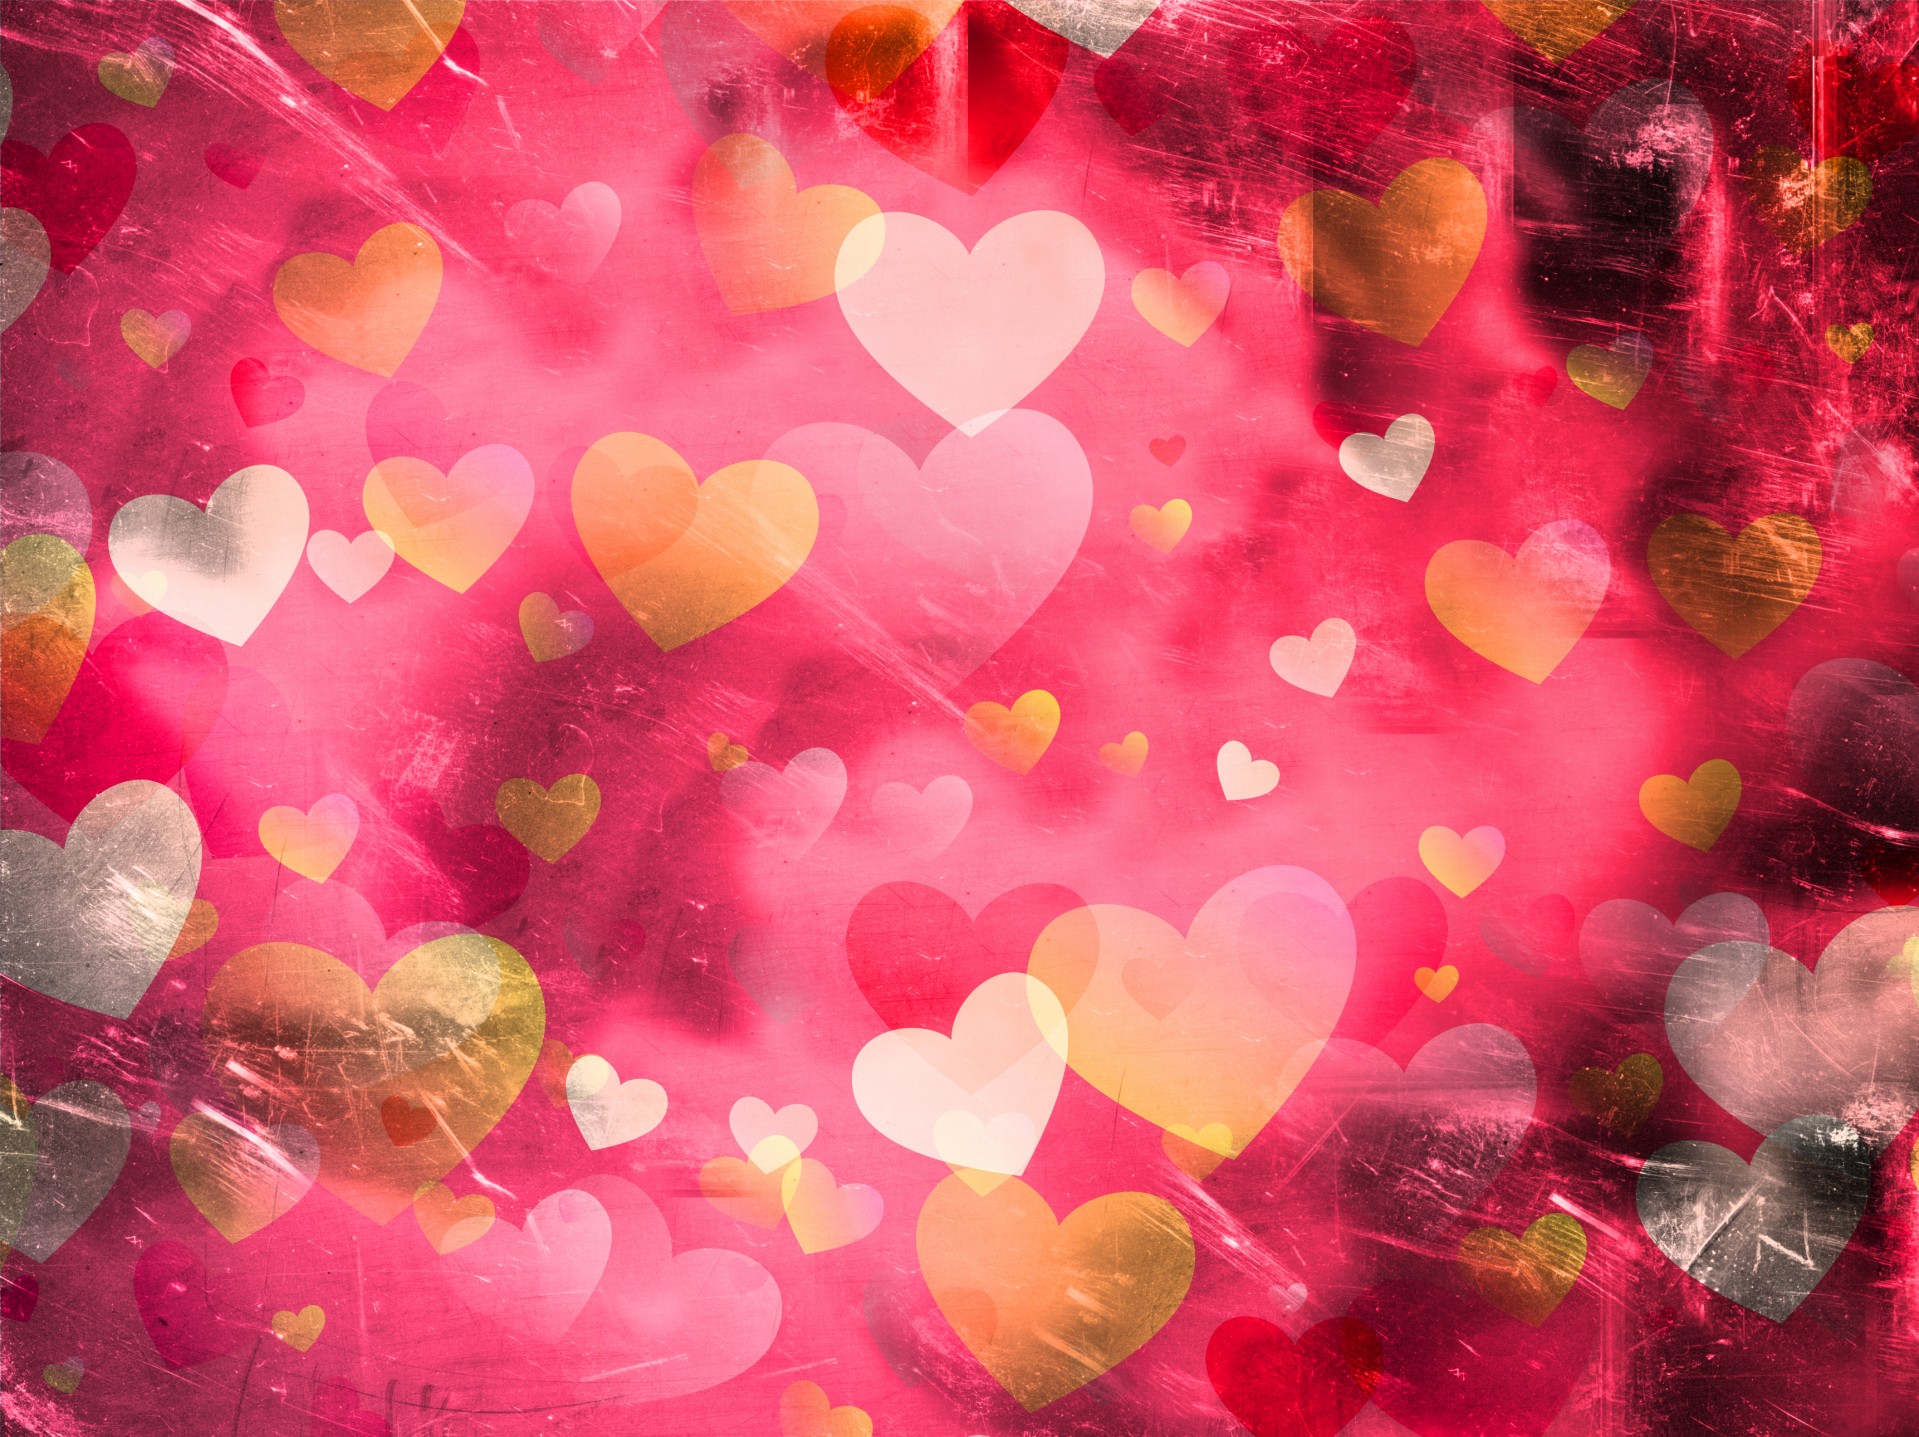 Grunge textured pink heart background.